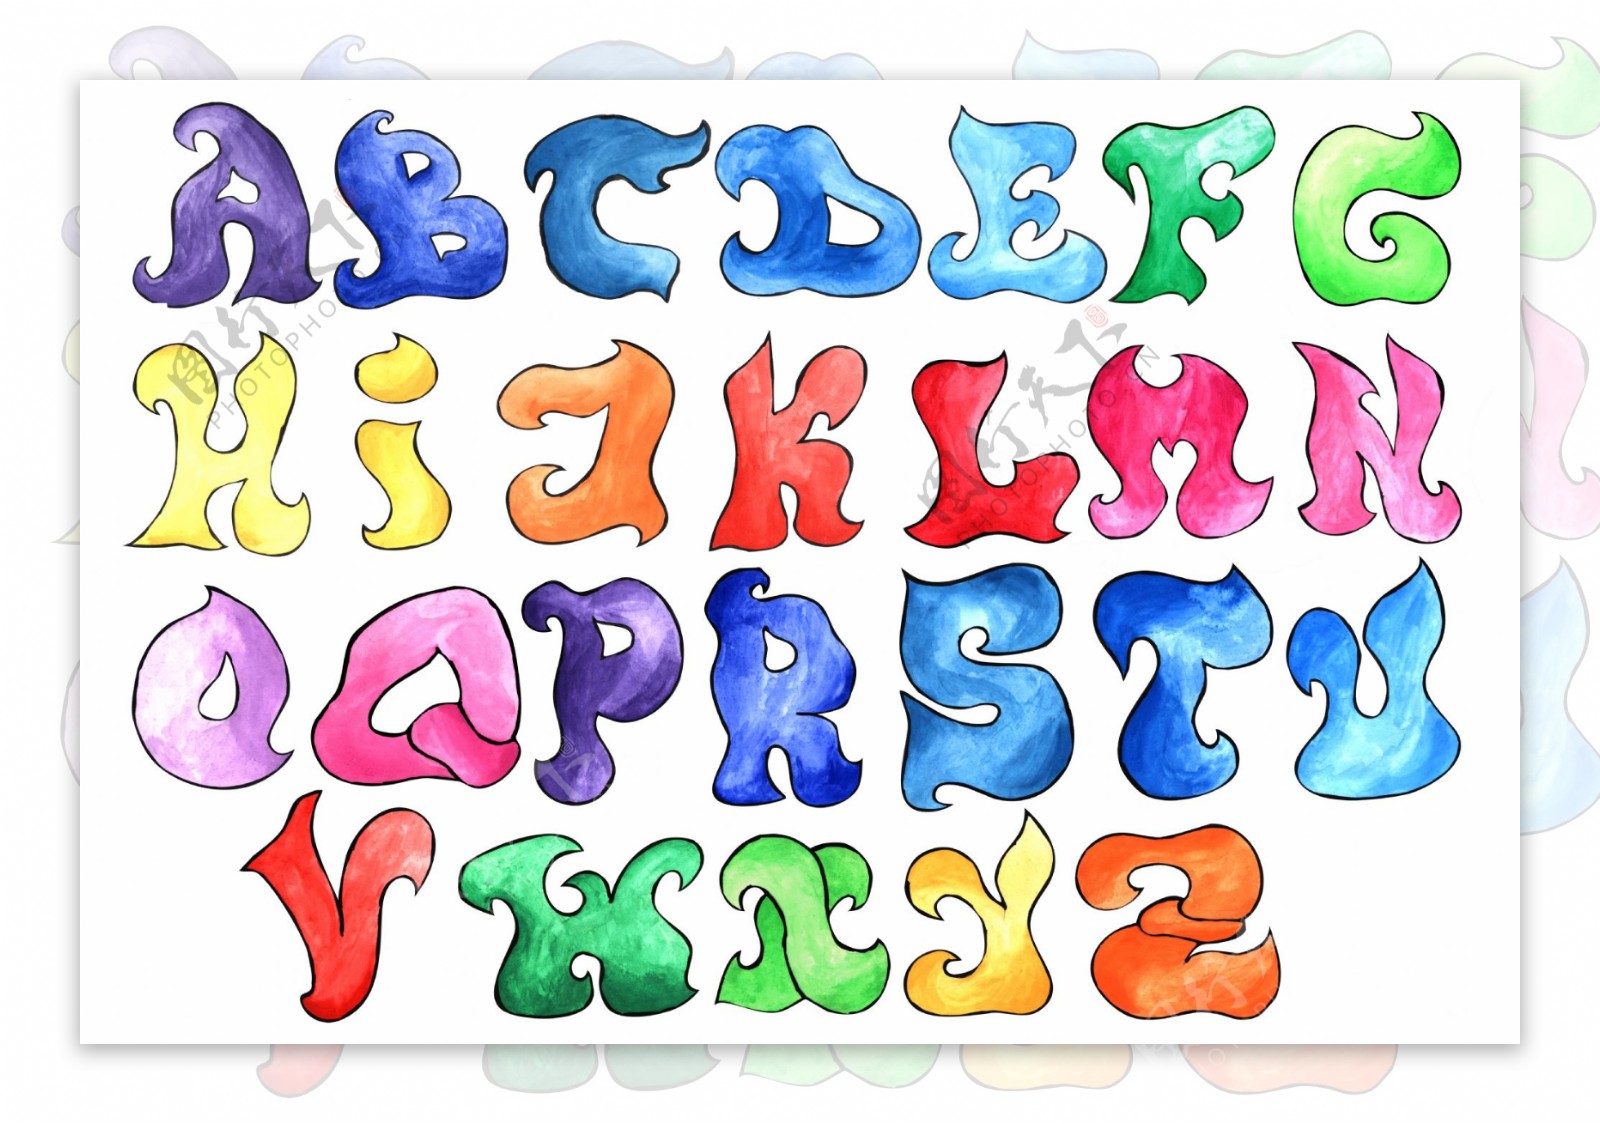 小字母 大创意——快乐英语节之三年级字母创意画比拼-搜狐大视野-搜狐新闻